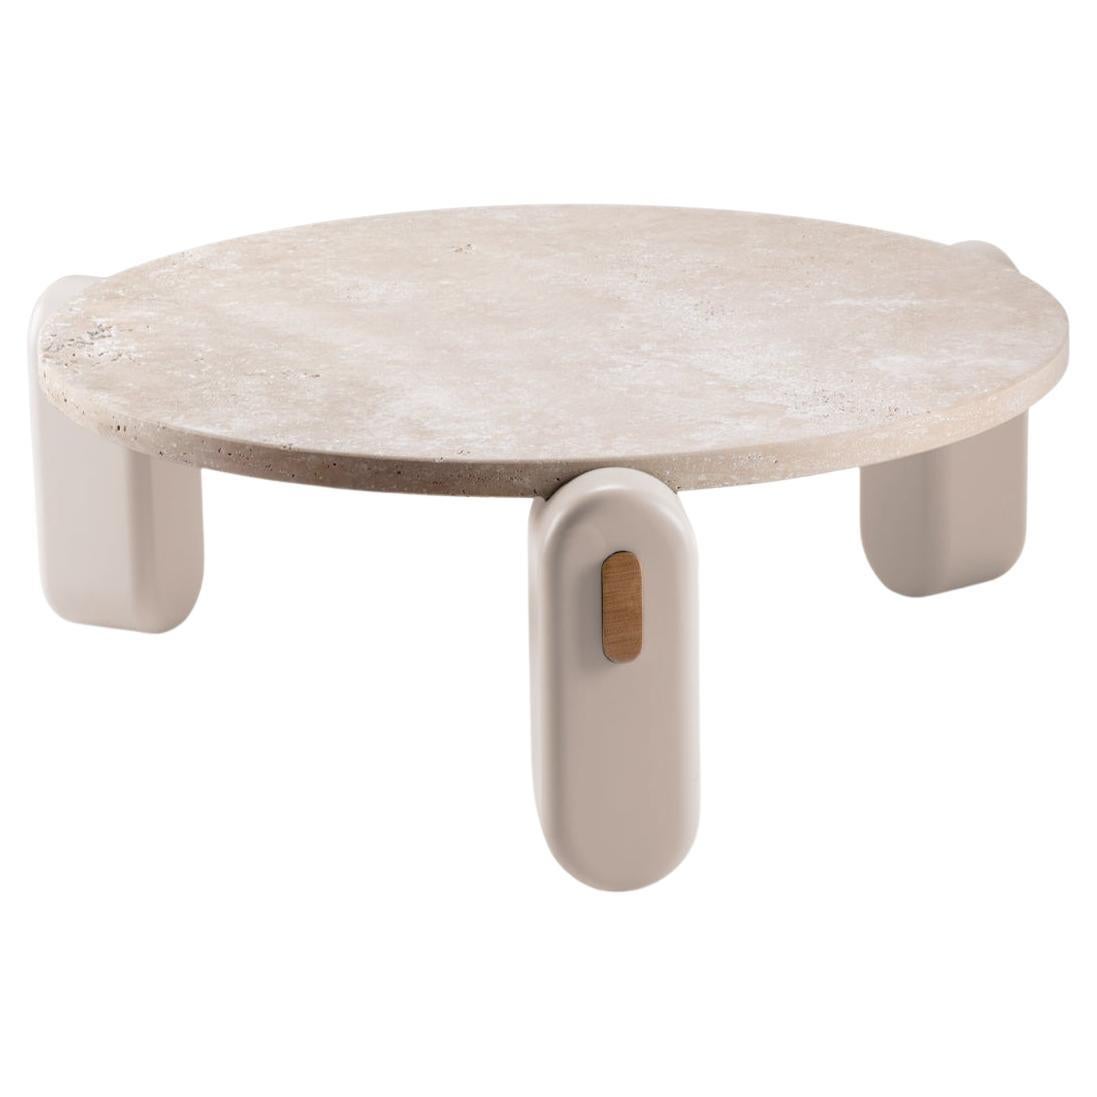 Table centrale Mona avec plateau en travertin, pieds laqués ivoire et structure en bois